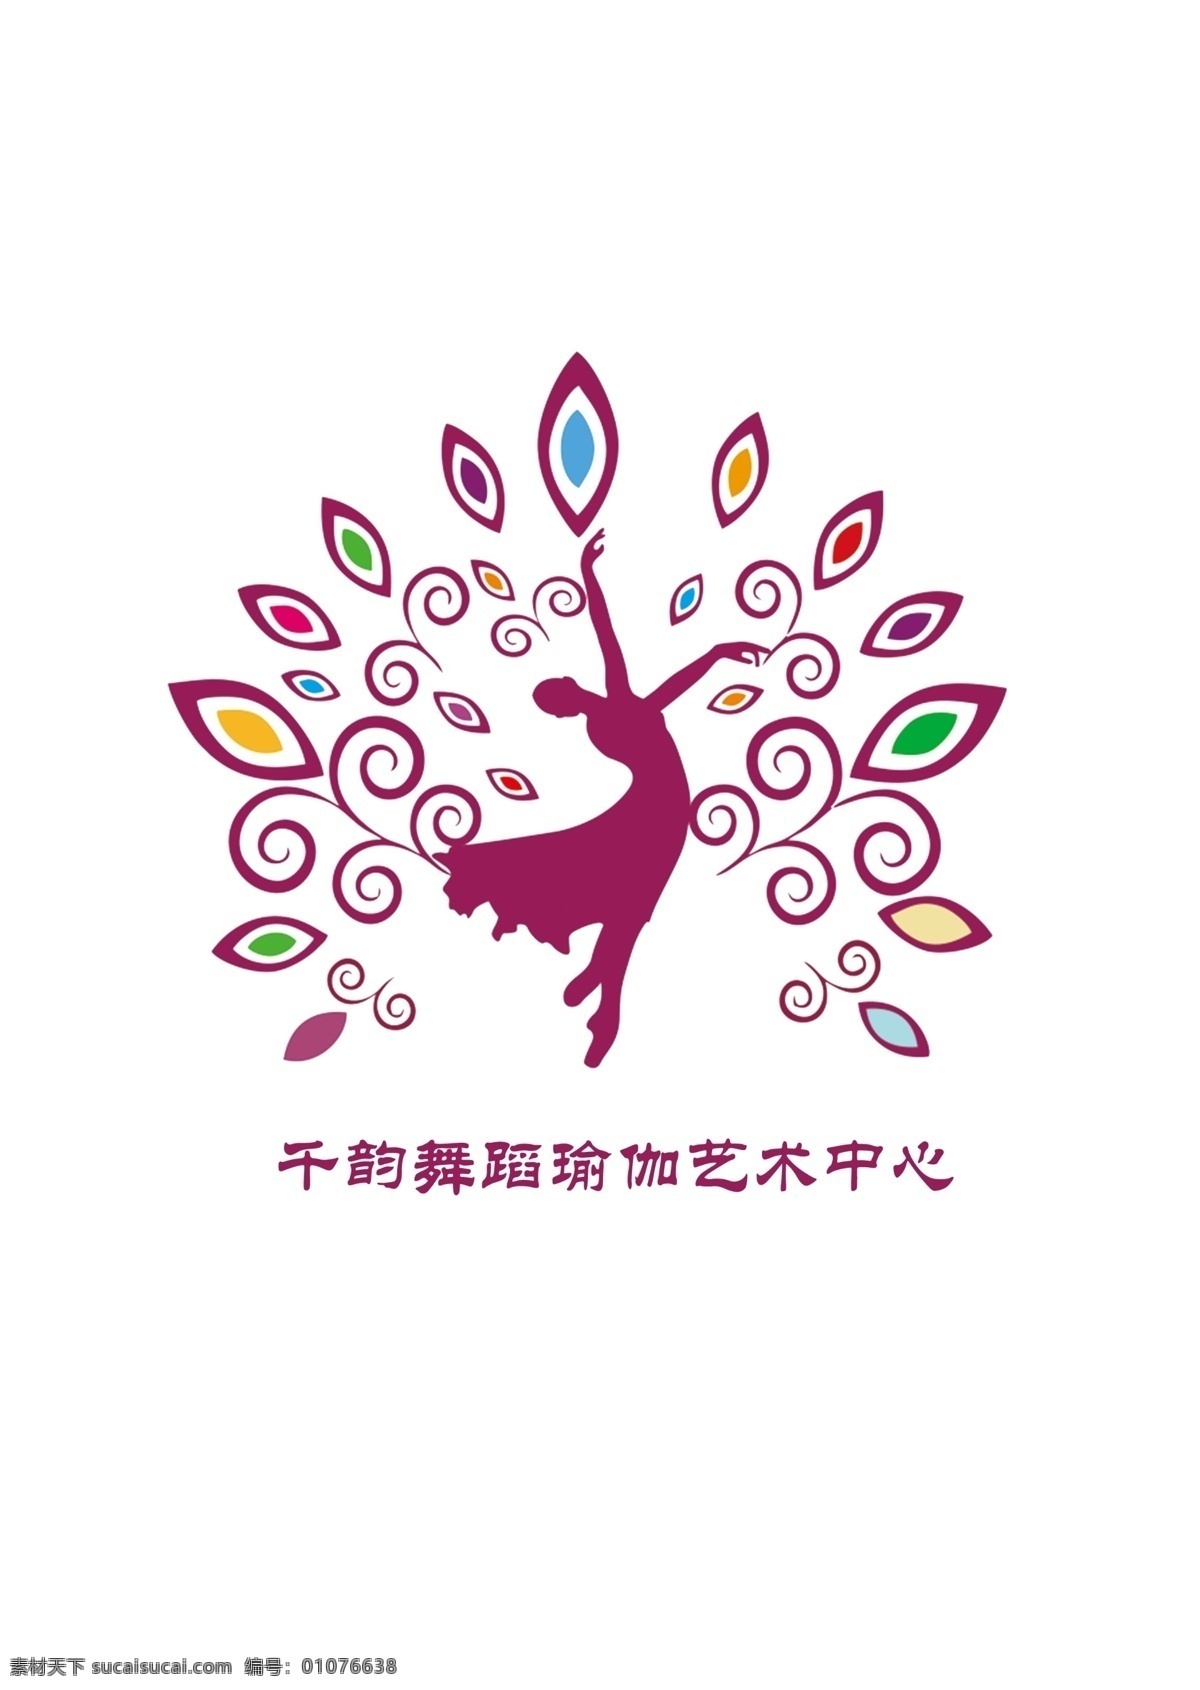 千韵舞蹈 舞蹈 瑜伽 logo 标识 原创 不可商用